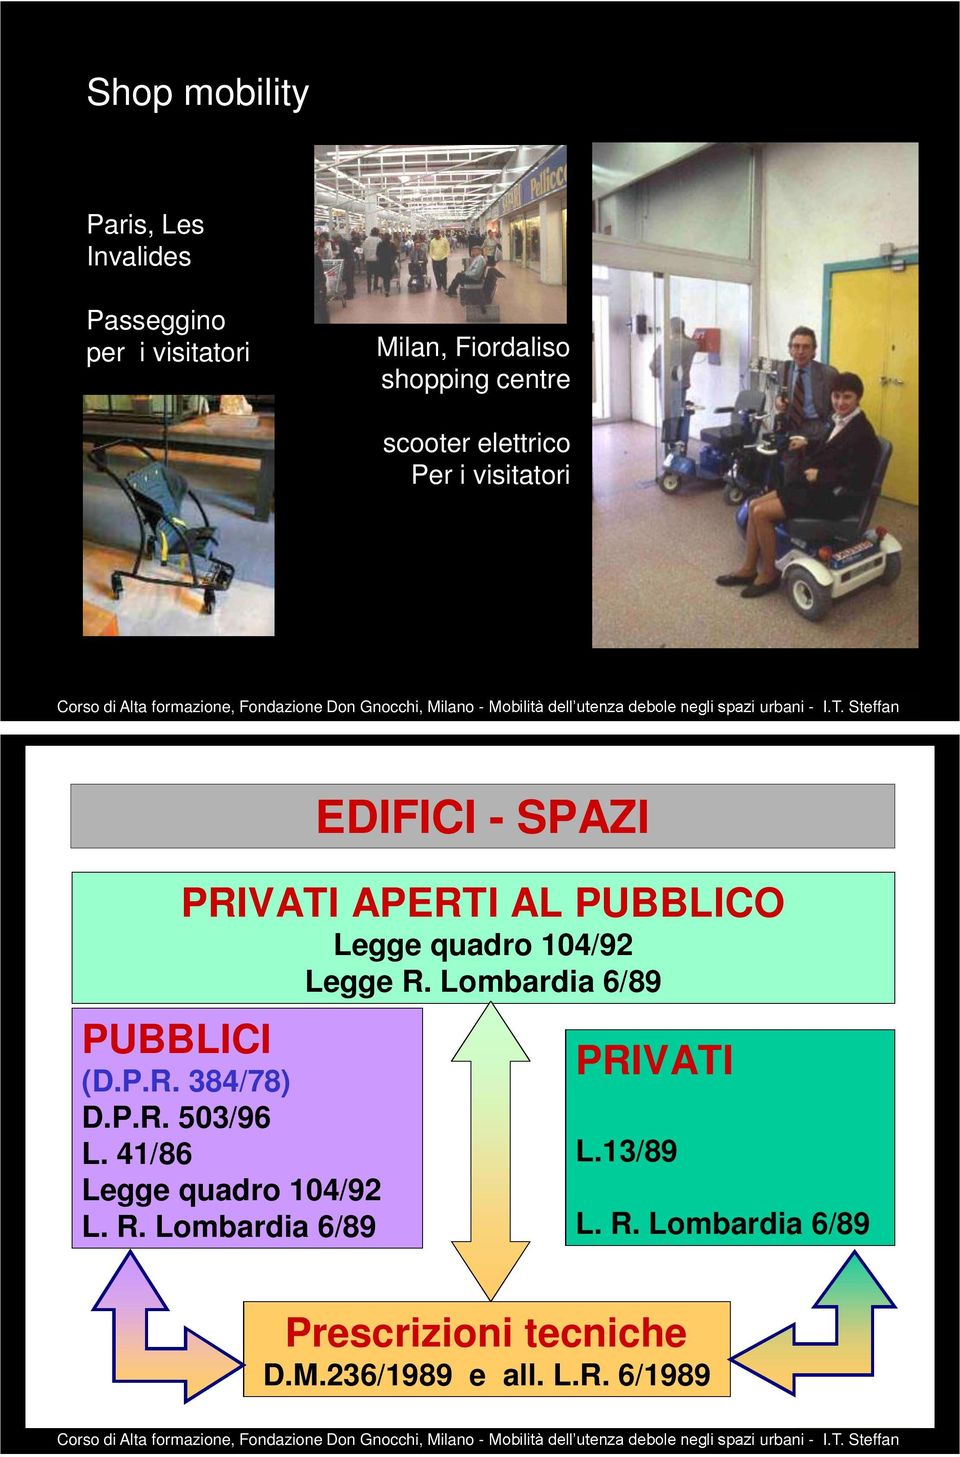 Legge R. Lombardia 6/89 PUBBLICI (D.P.R. 384/78) D.P.R. 503/96 L. 41/86 Legge quadro 104/92 L. R. Lombardia 6/89 PRIVATI L.